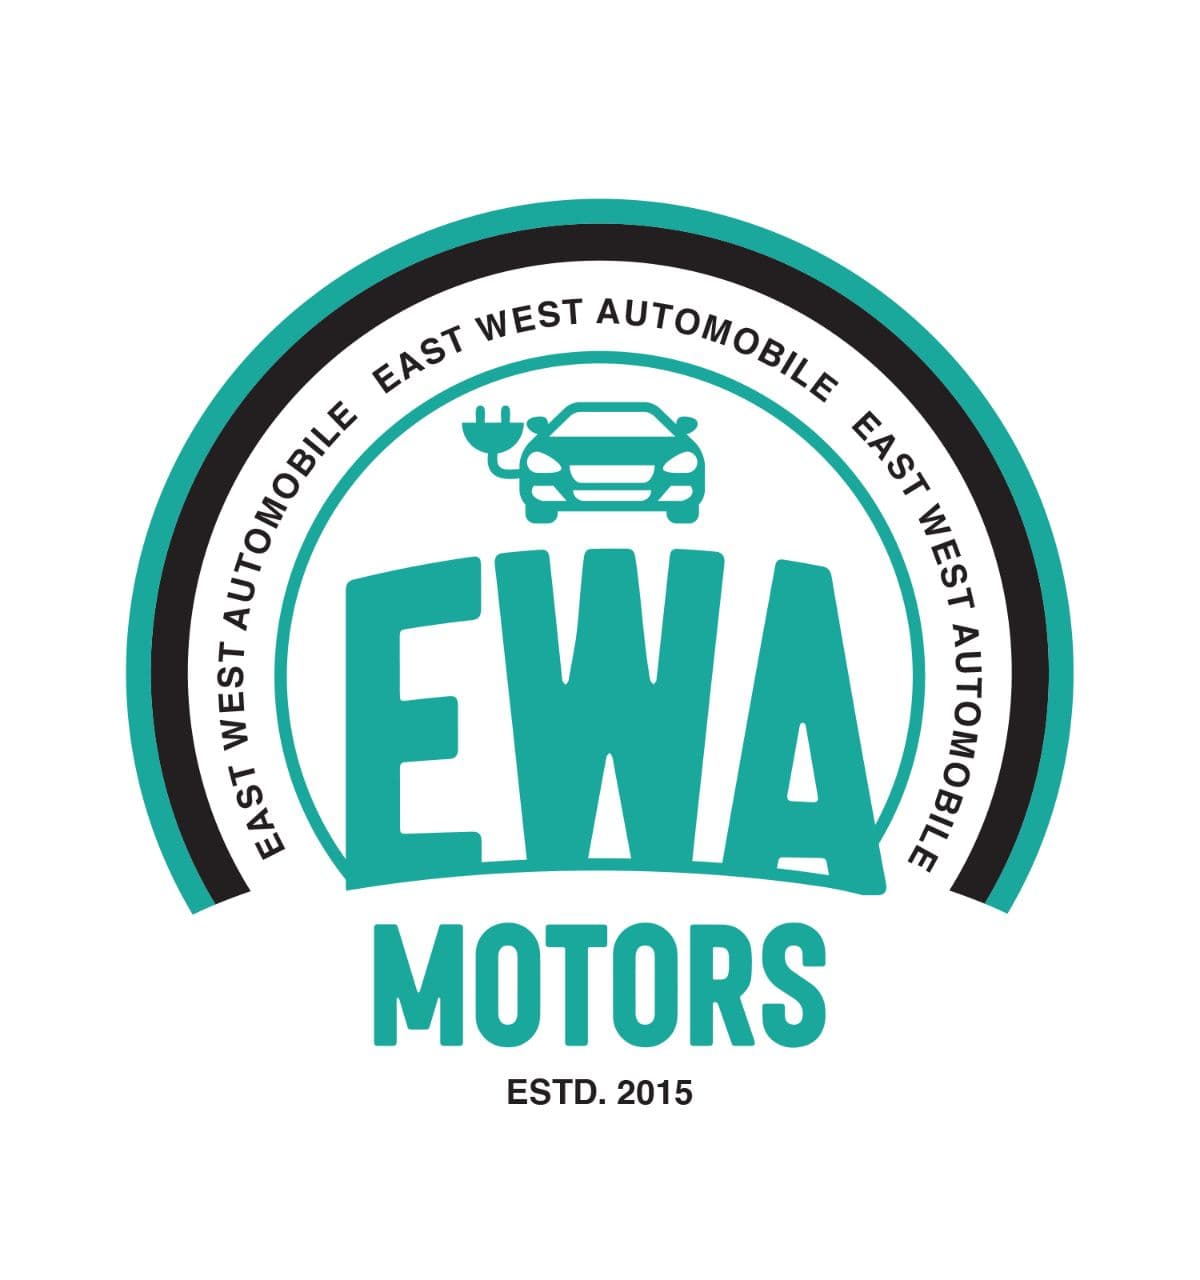 EWA Motors